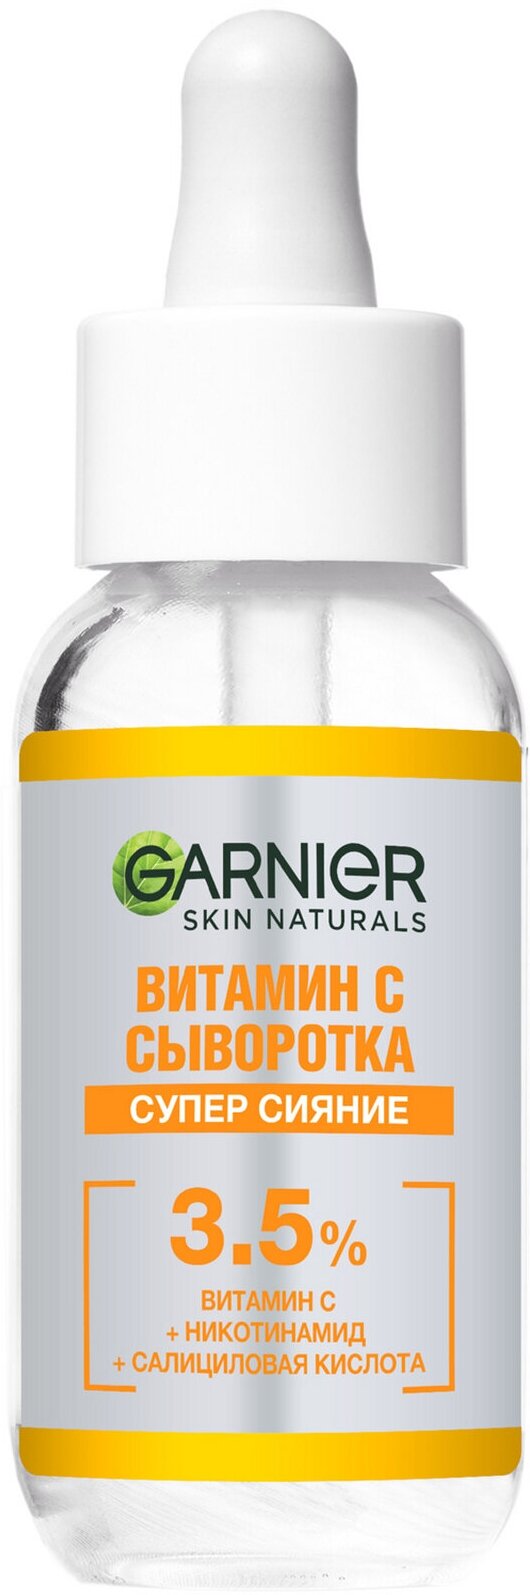 Сыворотка для лица с витамином С 3,5% Garnier Skin Naturals Витамин С сыворотка Супер сияние